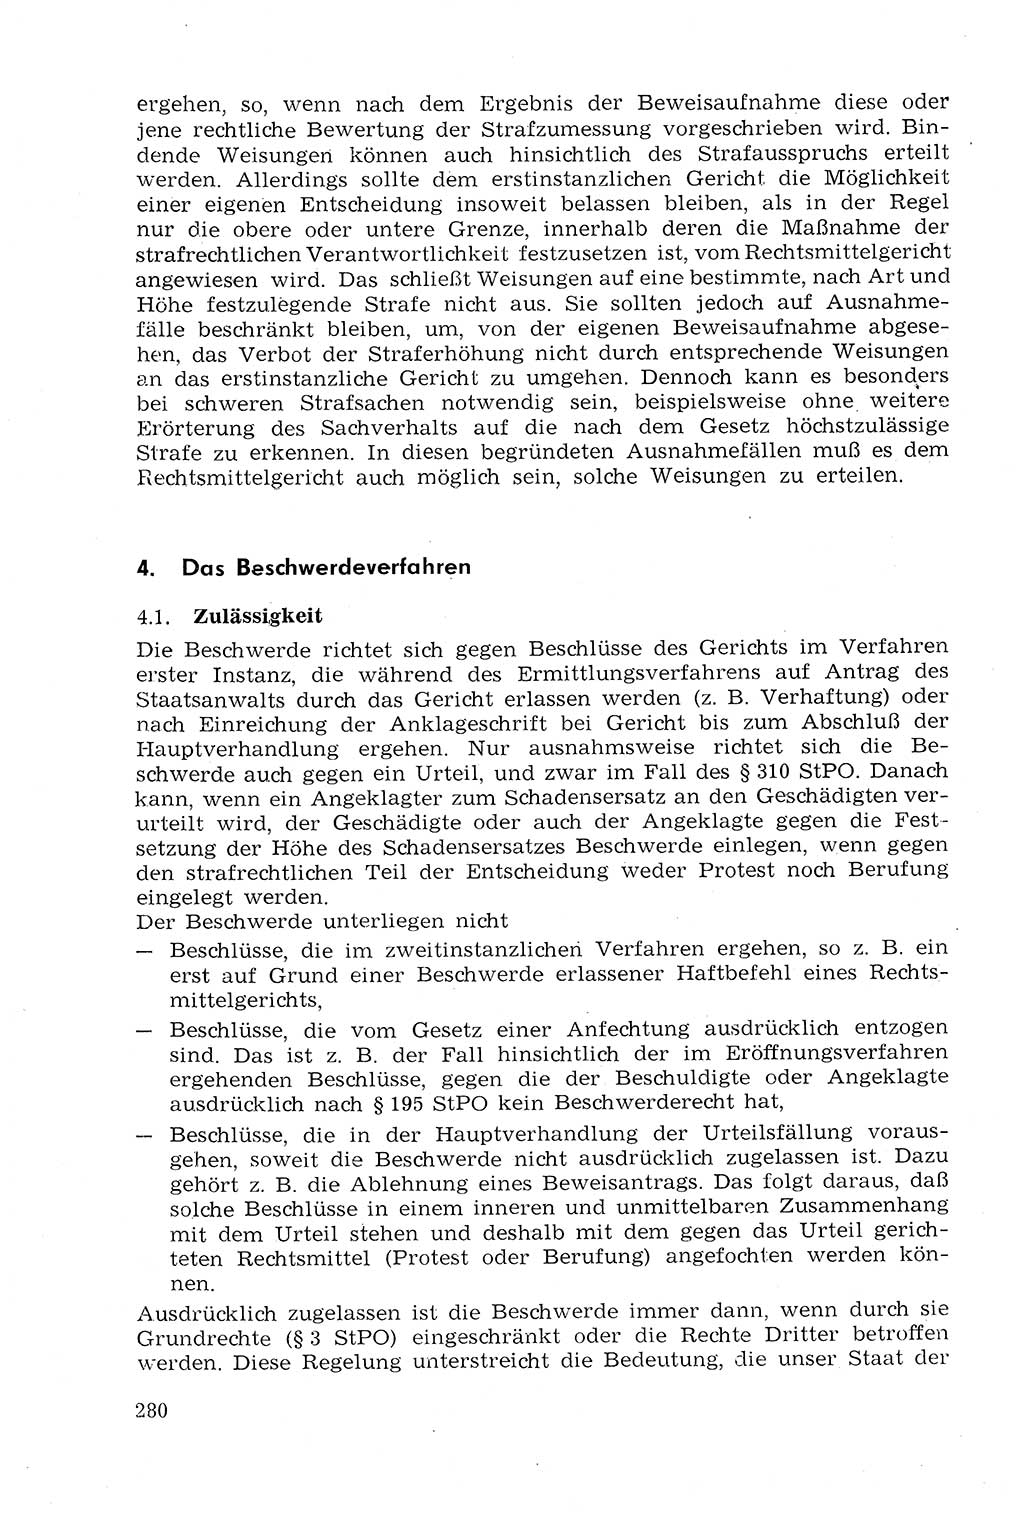 Strafprozeßrecht der DDR (Deutsche Demokratische Republik), Lehrmaterial 1969, Seite 280 (Strafprozeßr. DDR Lehrmat. 1969, S. 280)